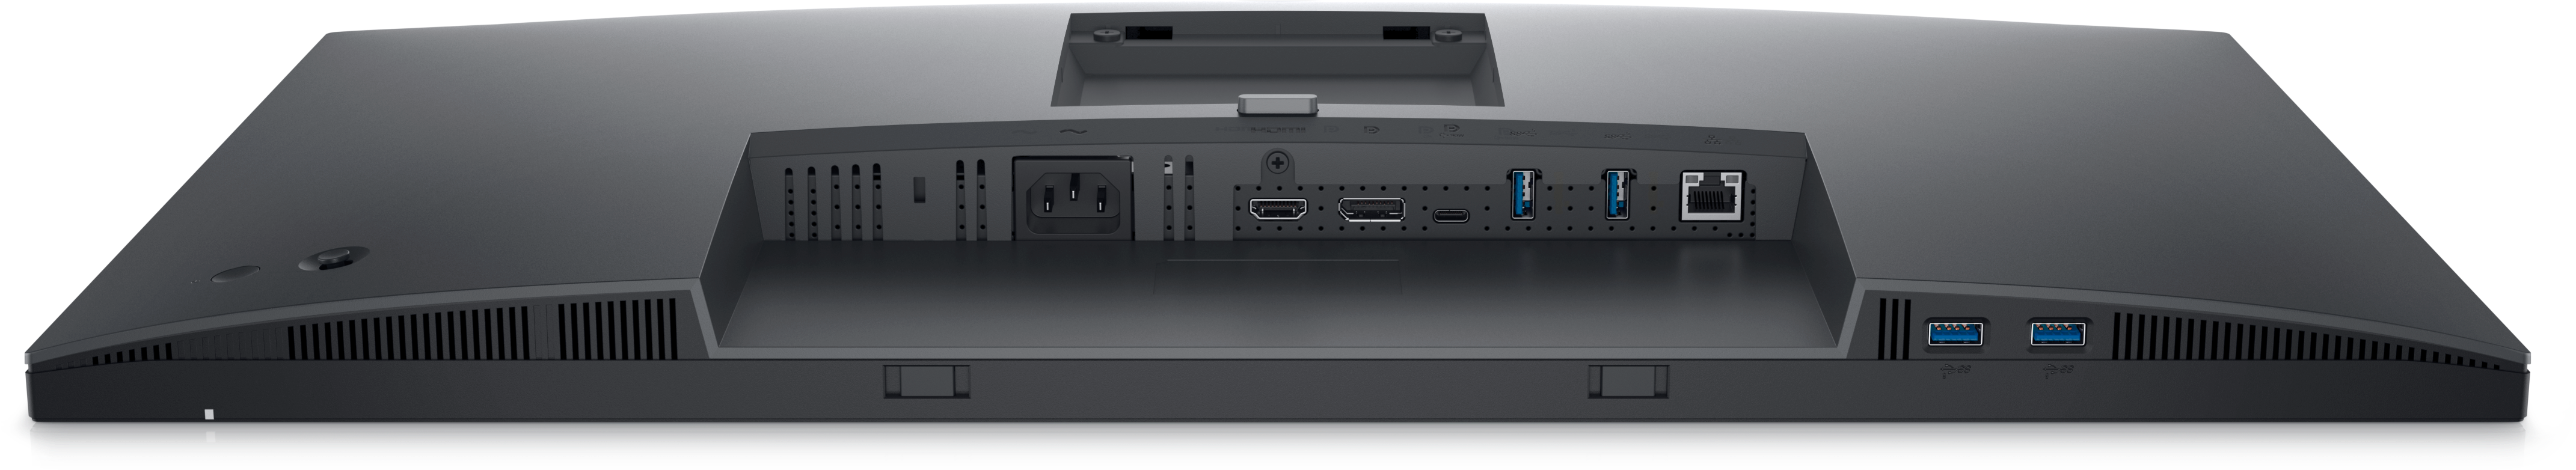 Dell 27 4K USB-C Hub Monitor - P2723QE